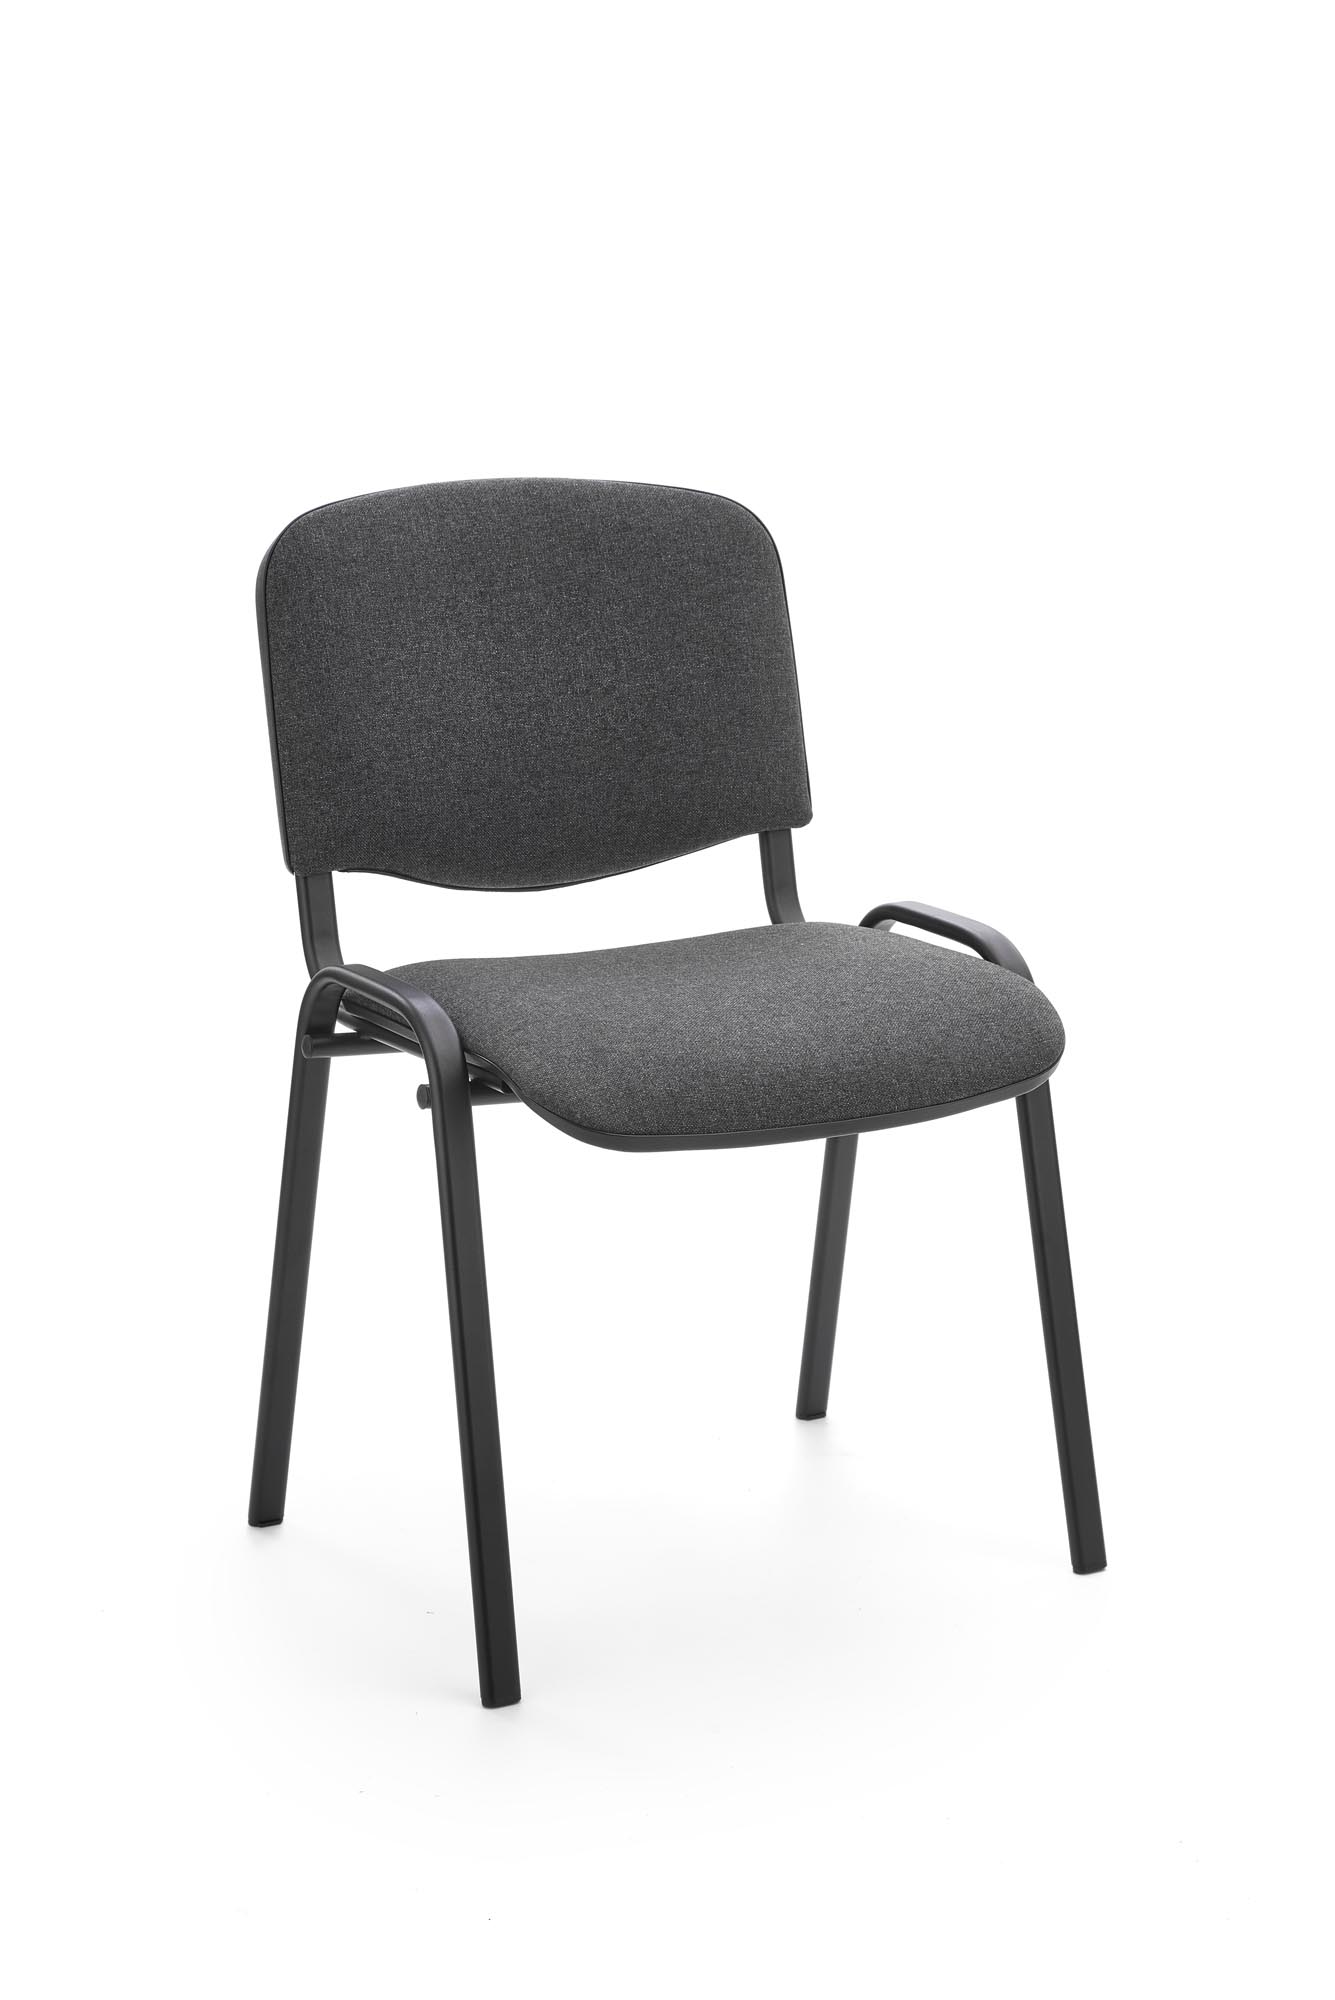 стул для посетителей изо черный ткань хром